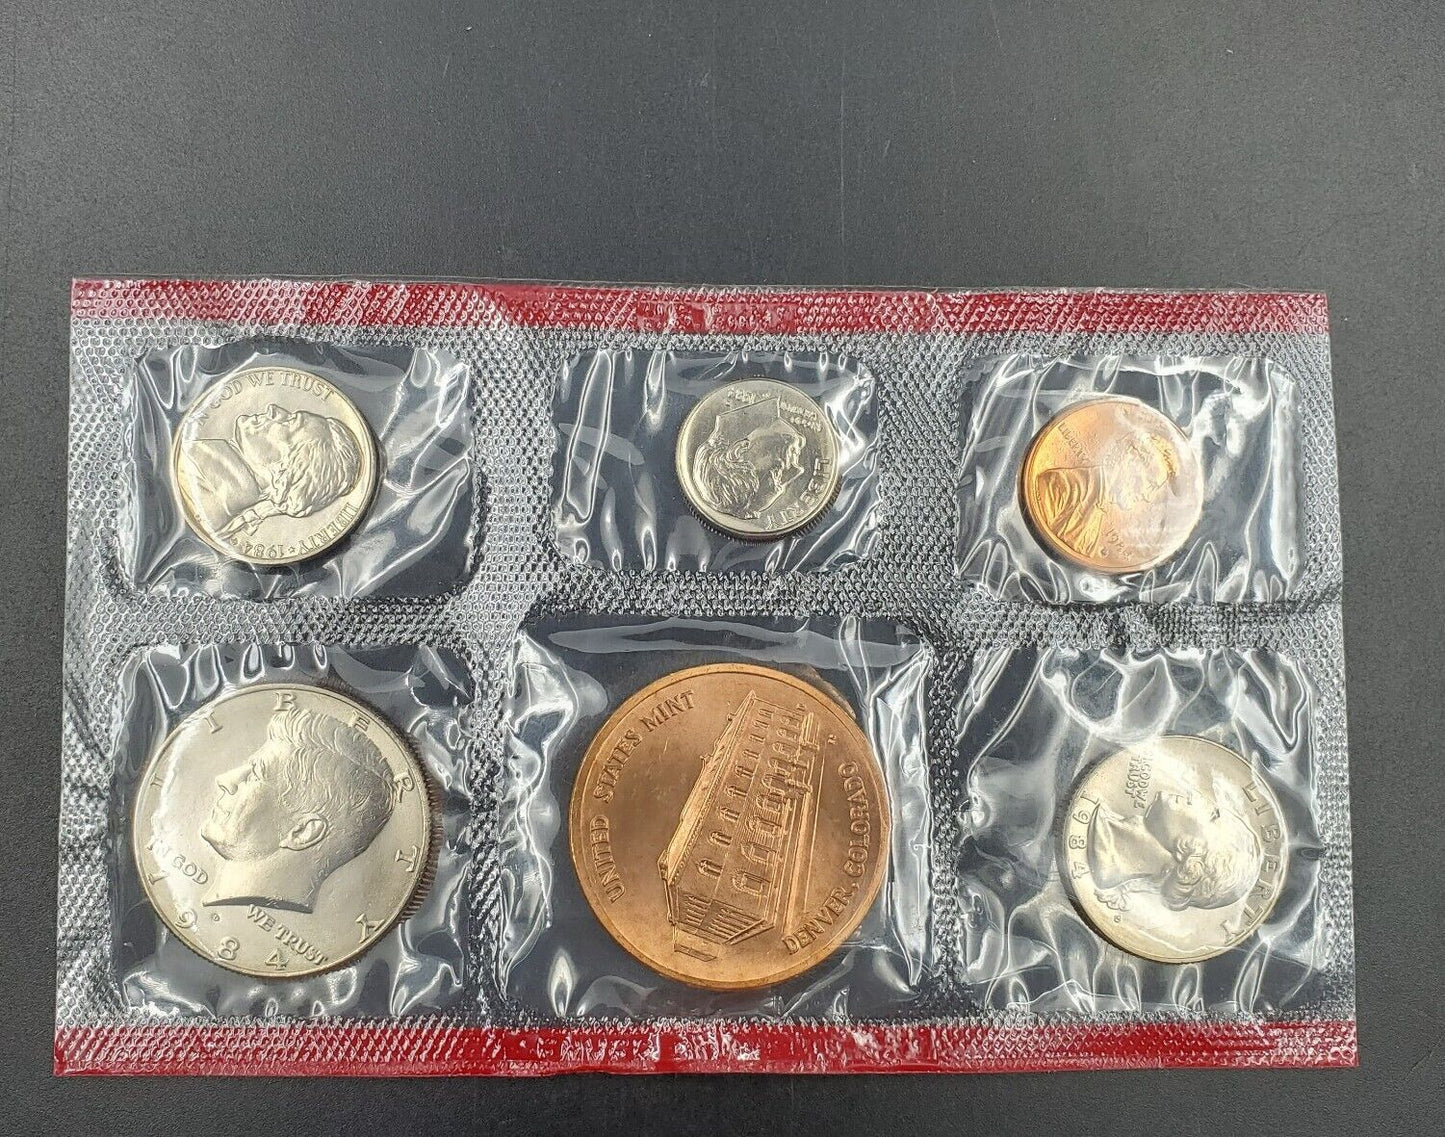 1988 D Denver Mint Souvenir Set Uncirculated Coins and Medal No Envelope